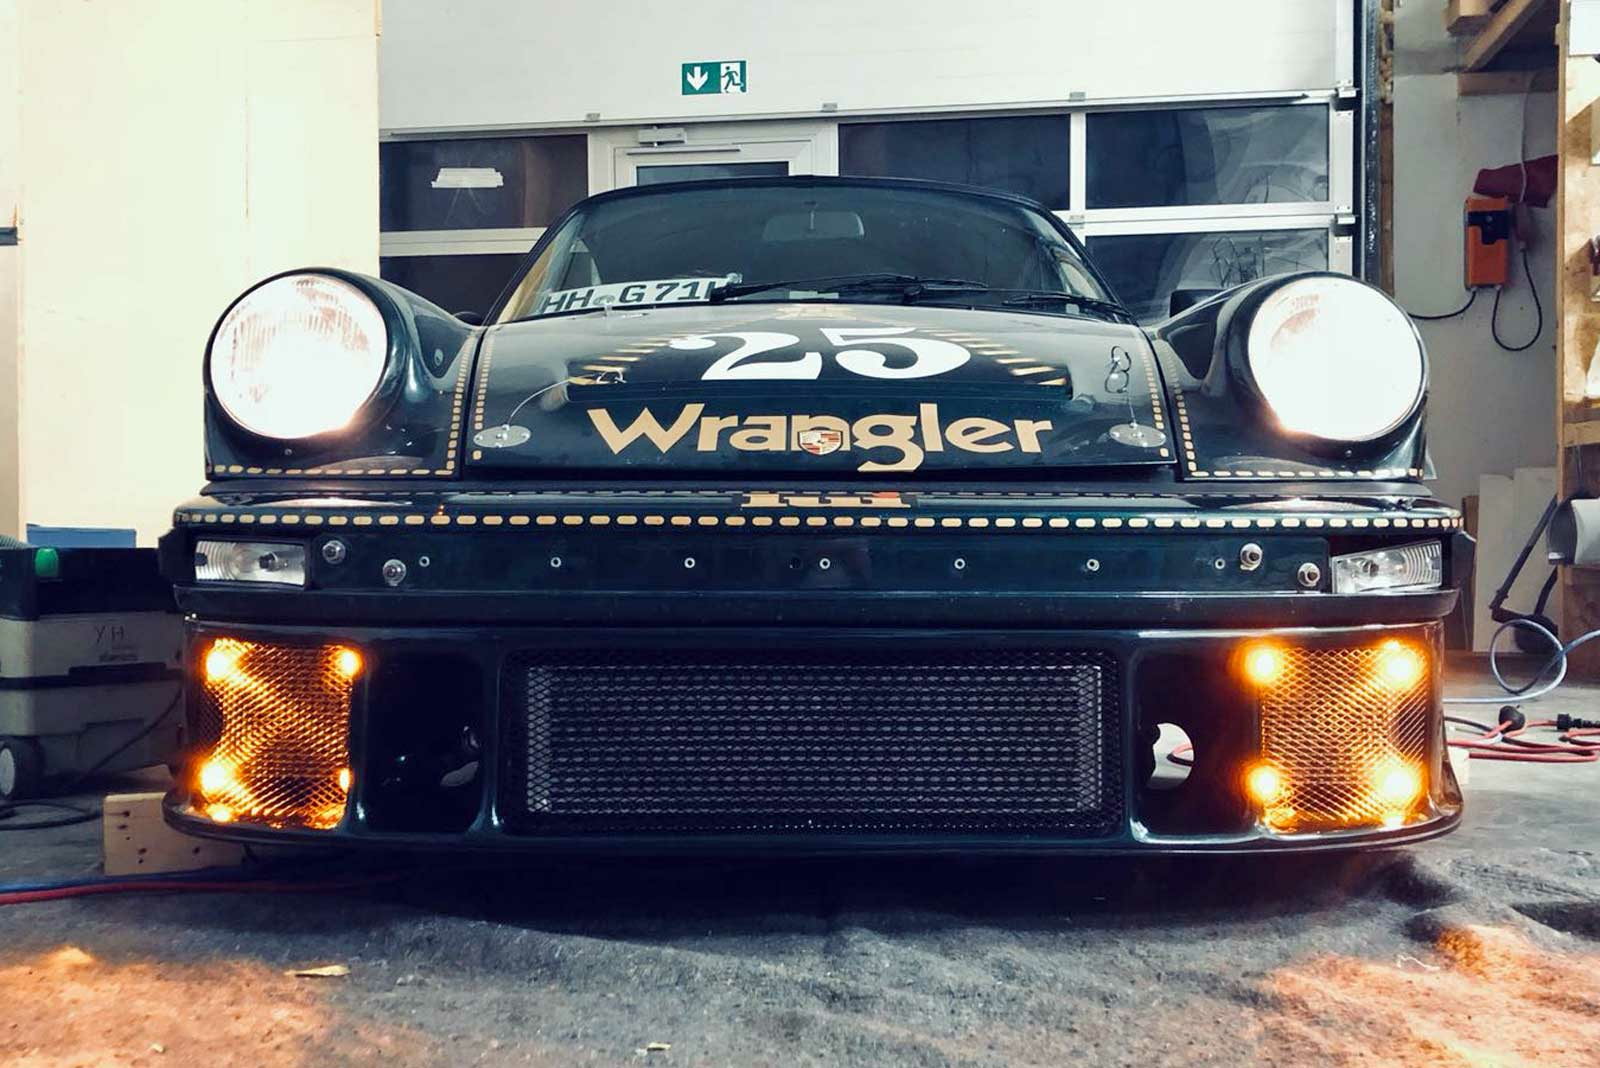 Porsche 911 "Wrangler" Theme